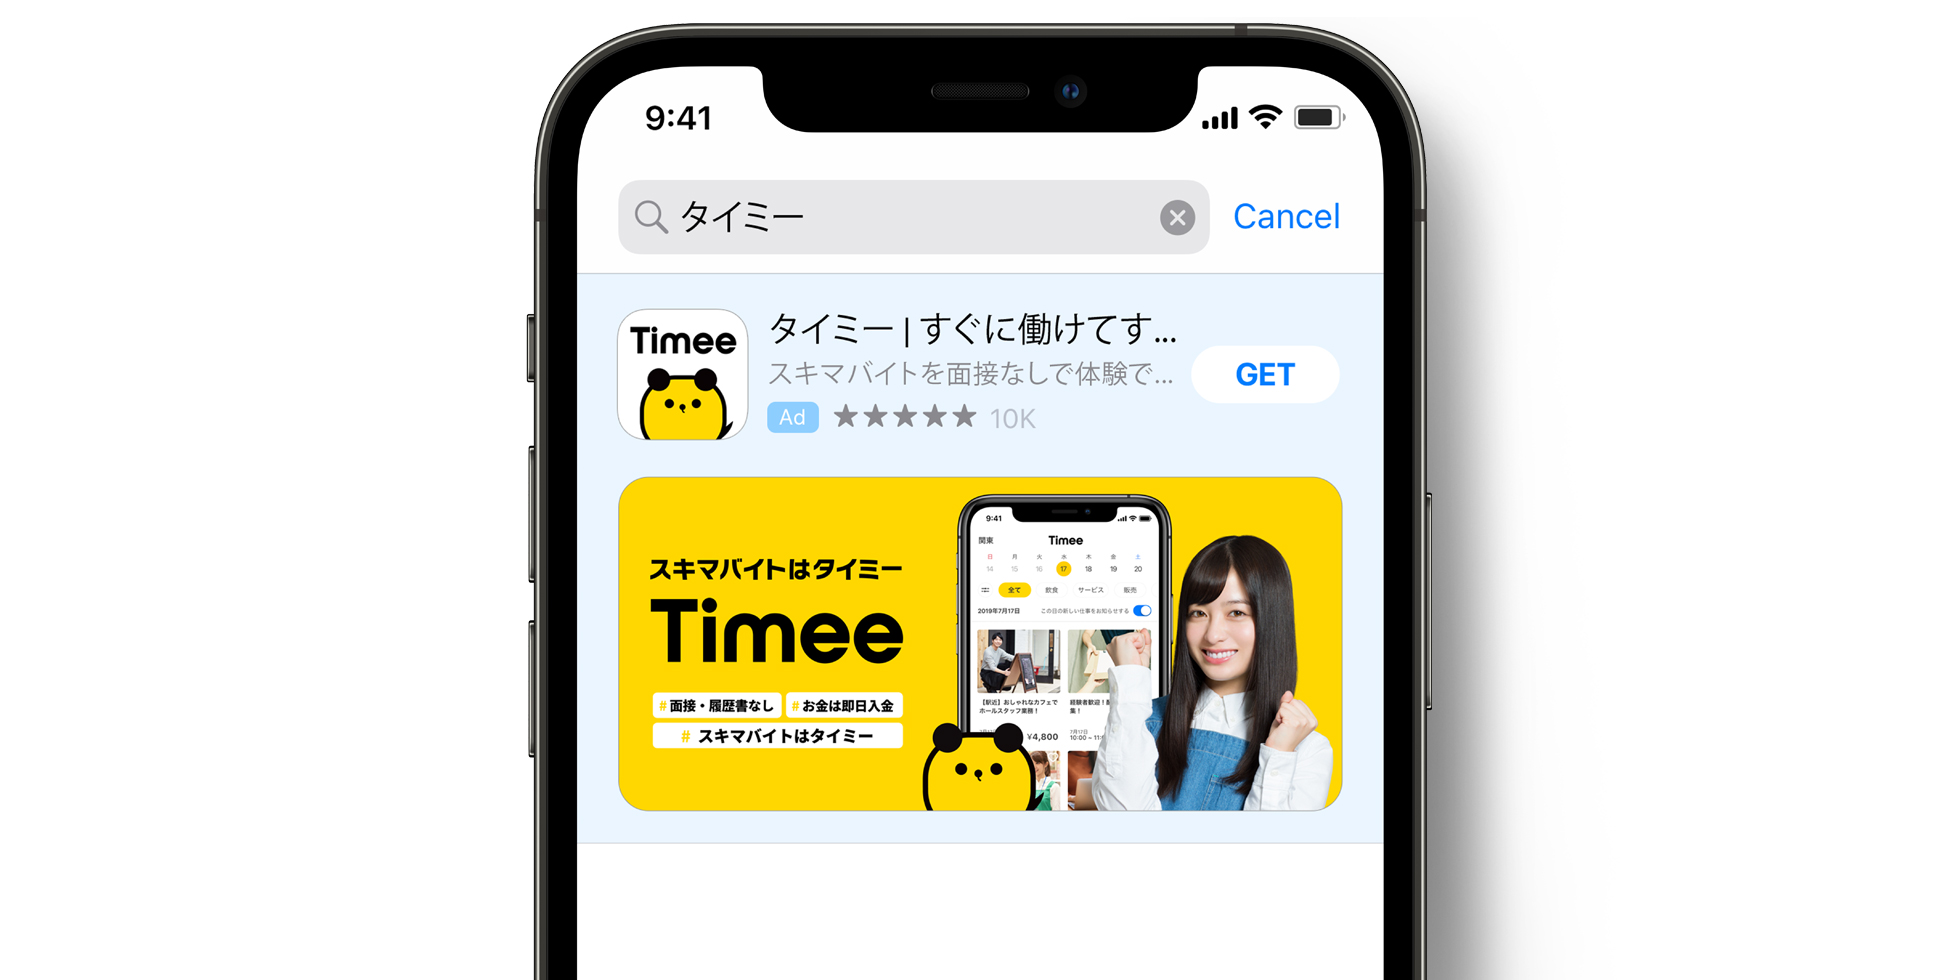 App Store의 Timee 광고